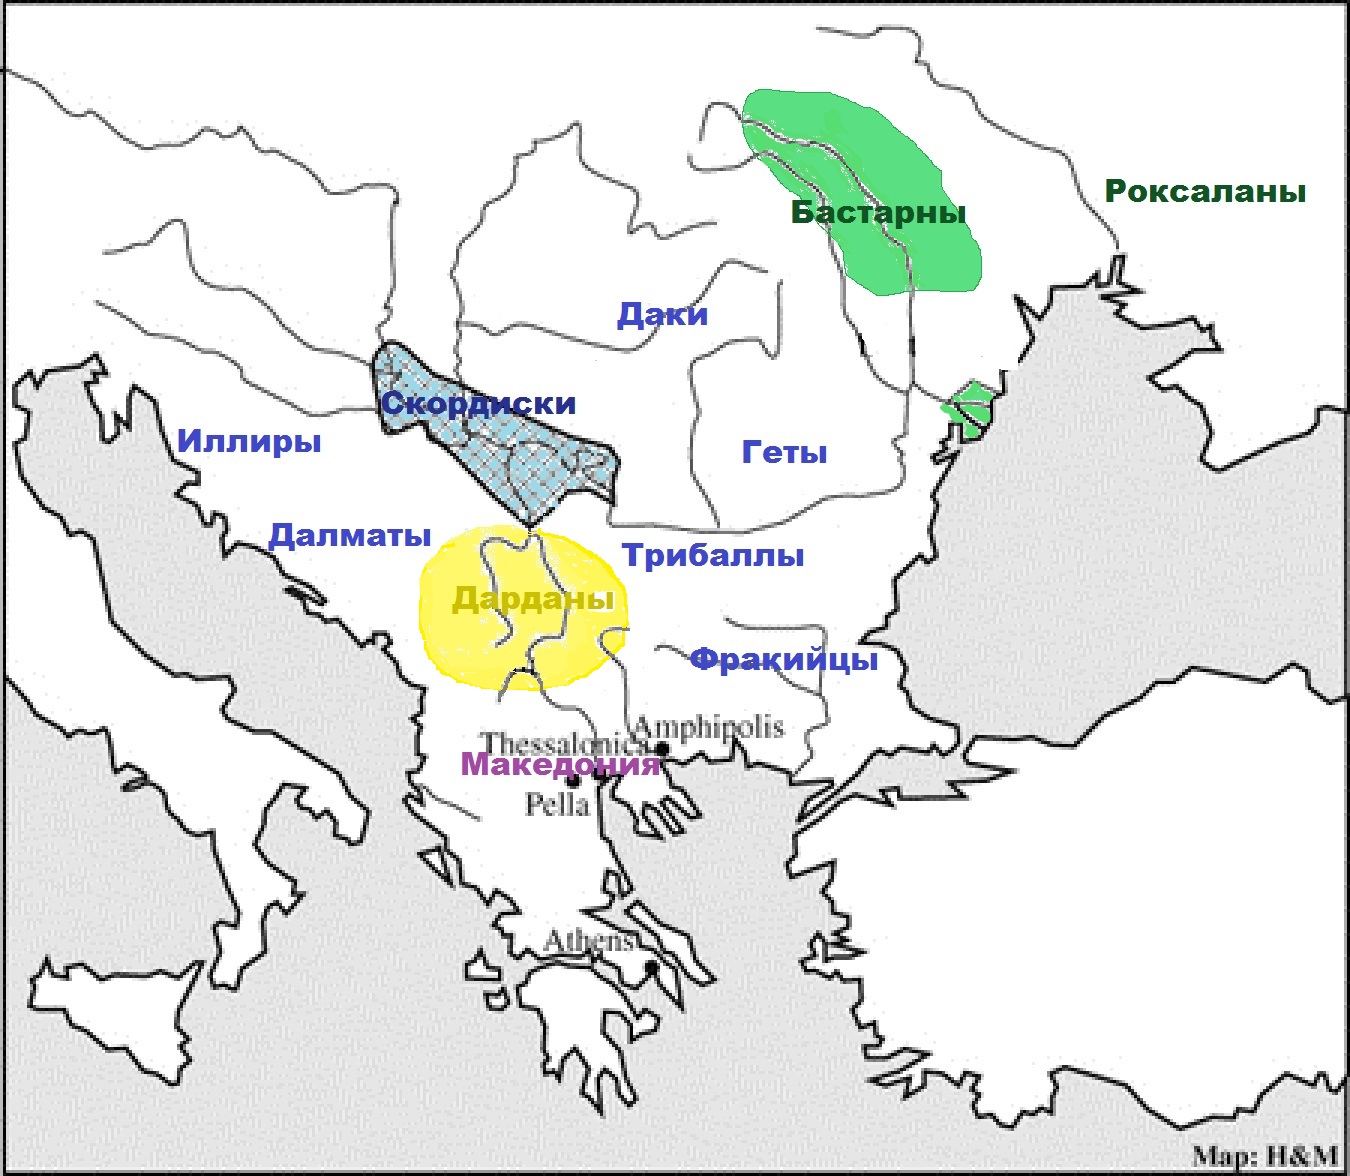 Народы Балканского полуострова во втором - первом веке до нашей эры